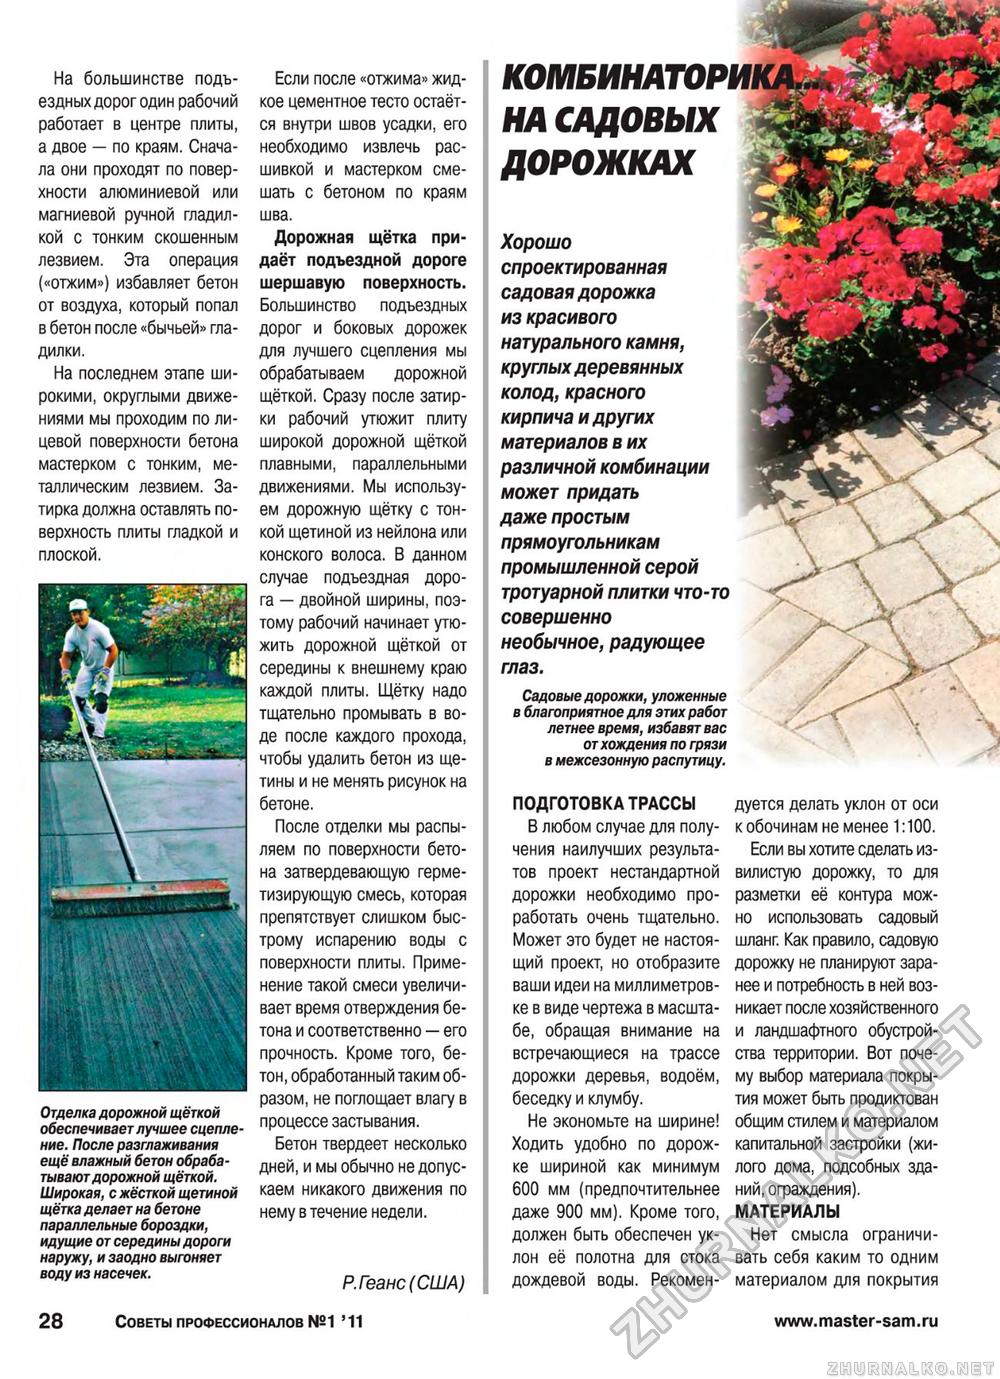 Советы профессионалов 2011-01, страница 28